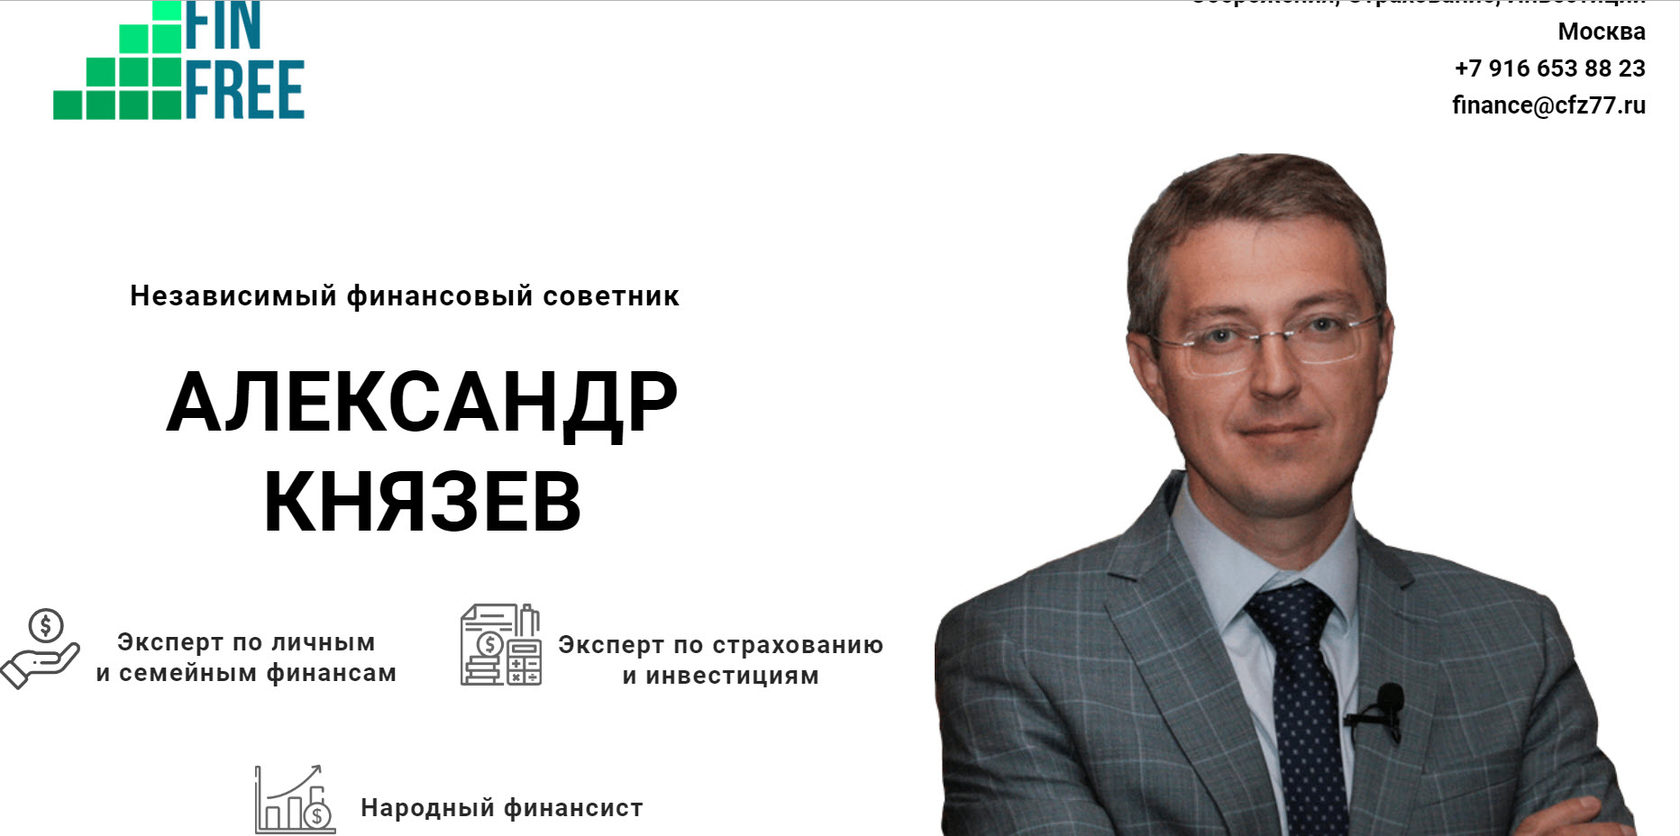 князев адвокат москва